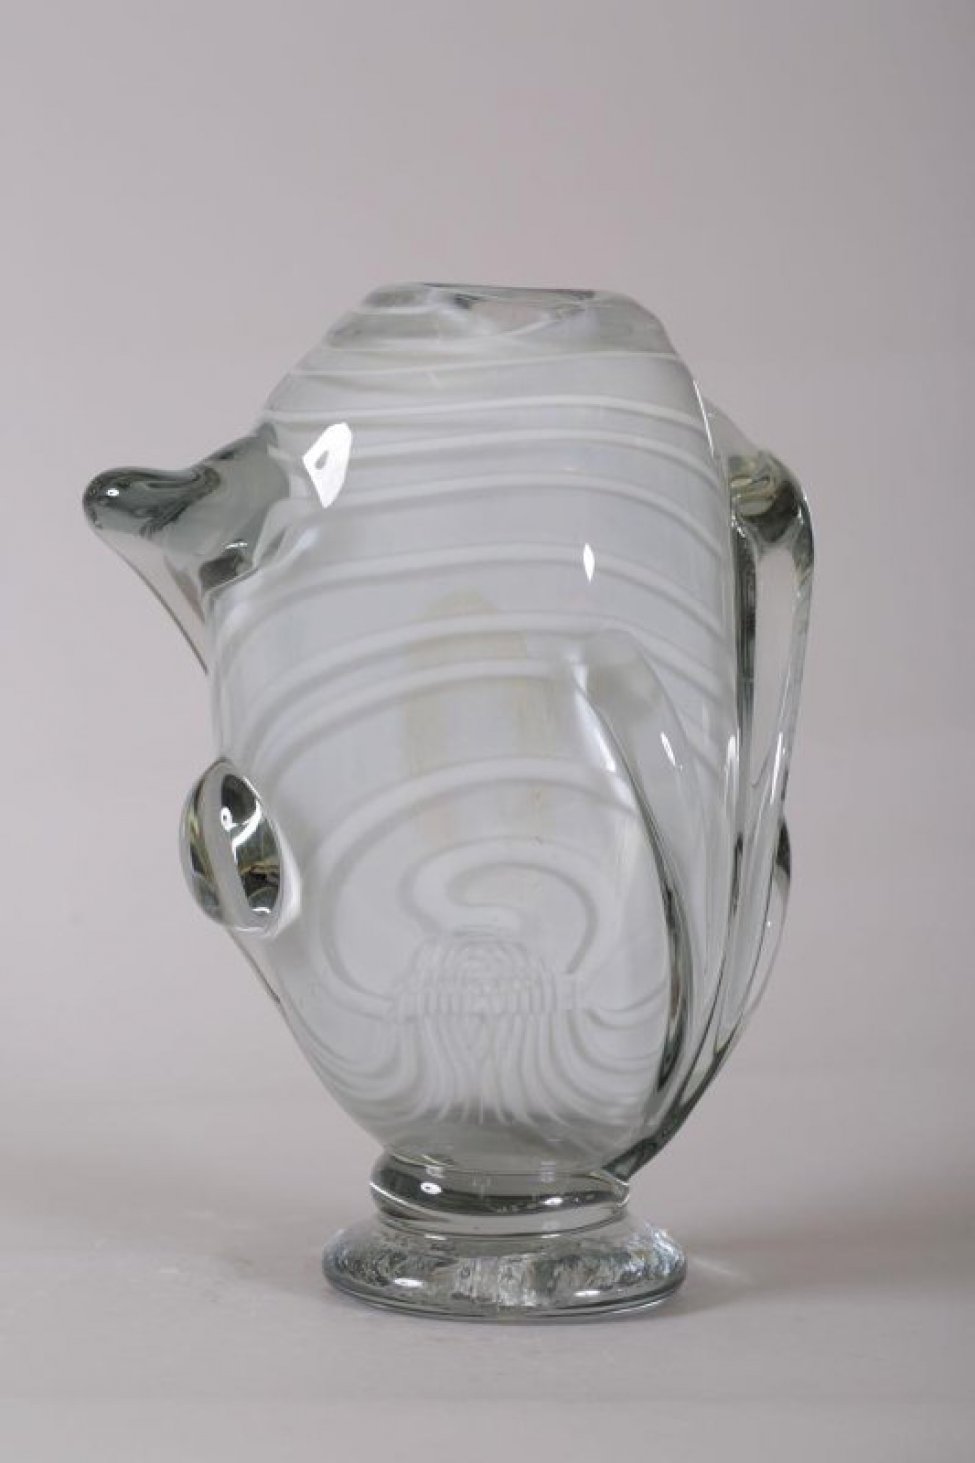 ваза серого цвета с белыми полосами из толстого стекла, вертикальной, не правильной формы, с налепами на ножке, с узким отверстием. Налепы и ножка из прозрачного стекла.